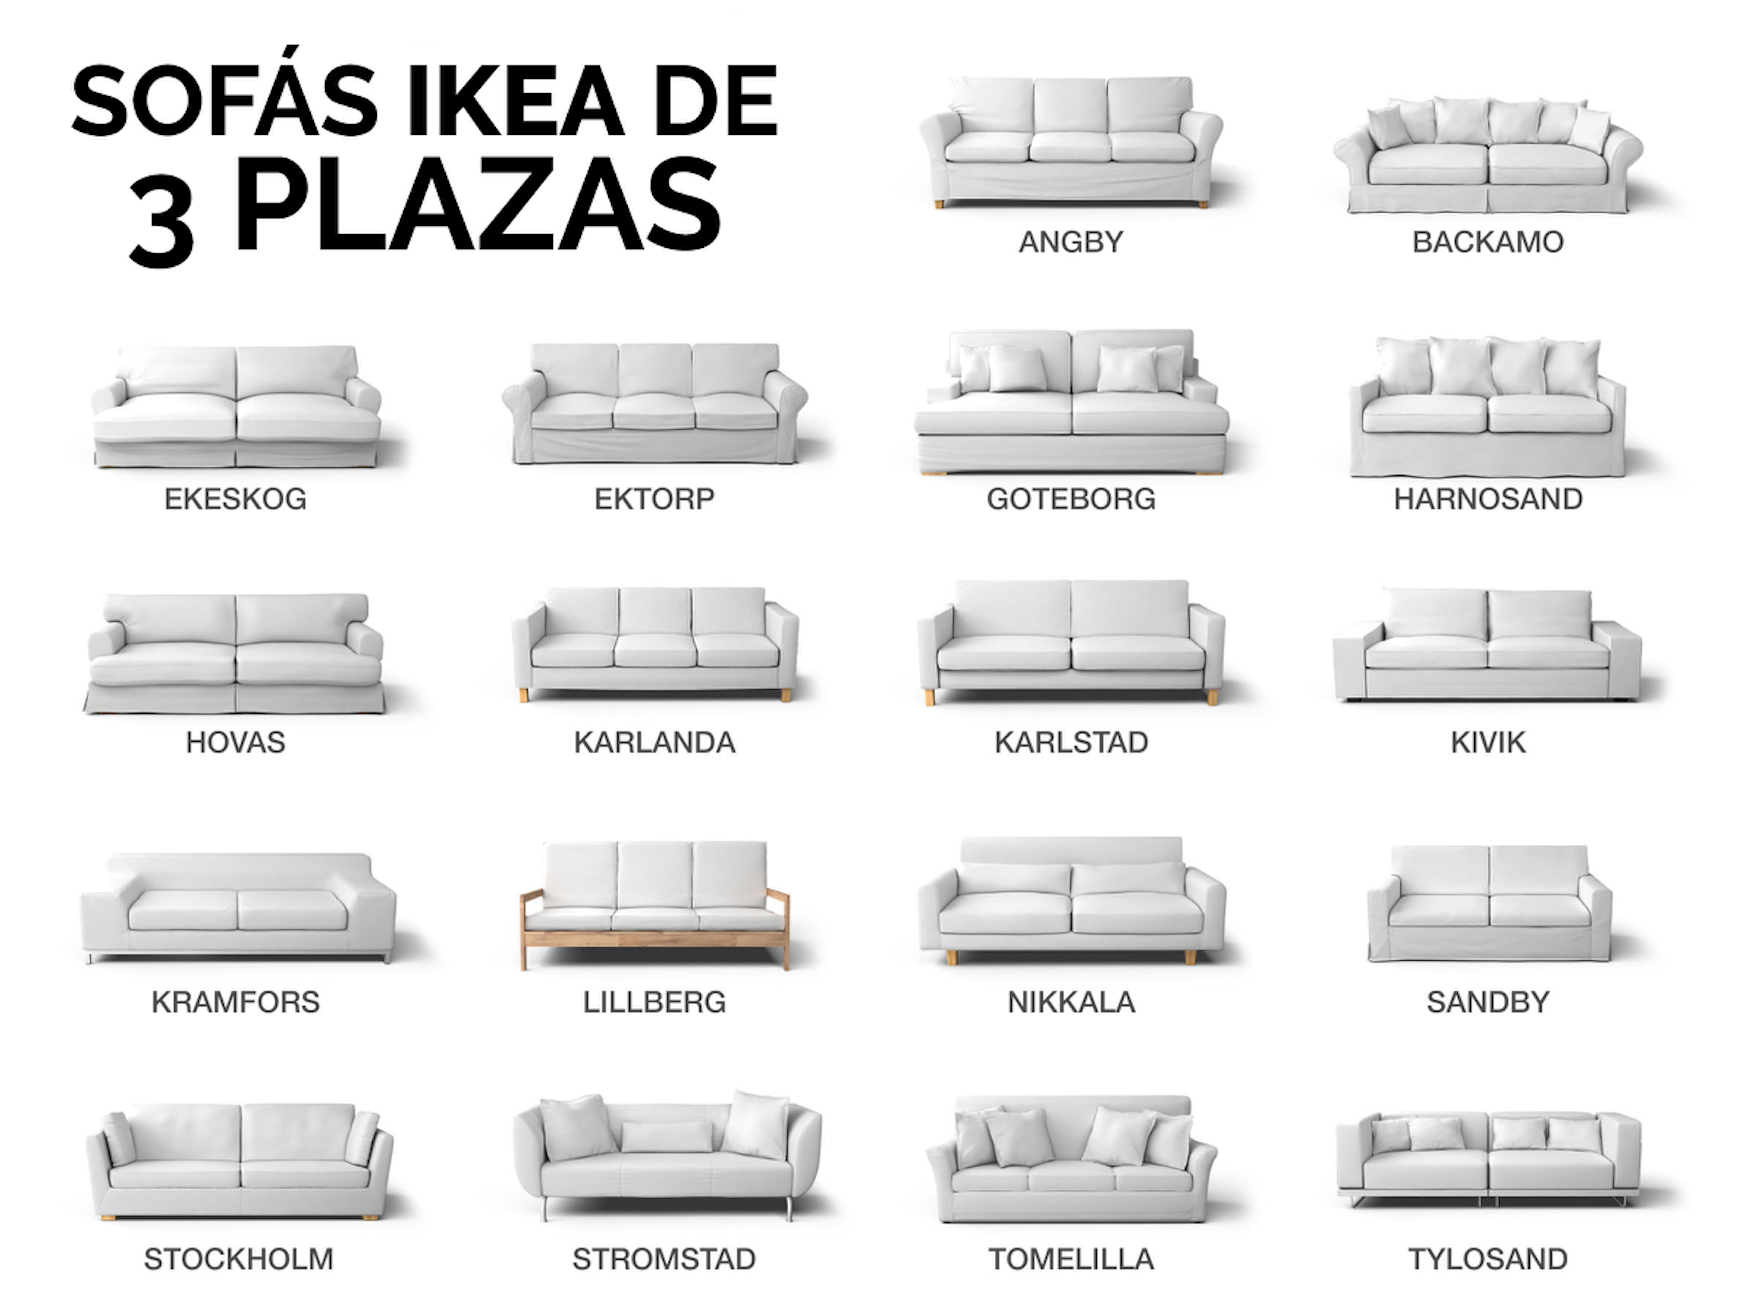 Qué sofá IKEA de 3 plazas tengo? - Identifica tu sofá IKEA | Comfort Works - Inspiración y decoración